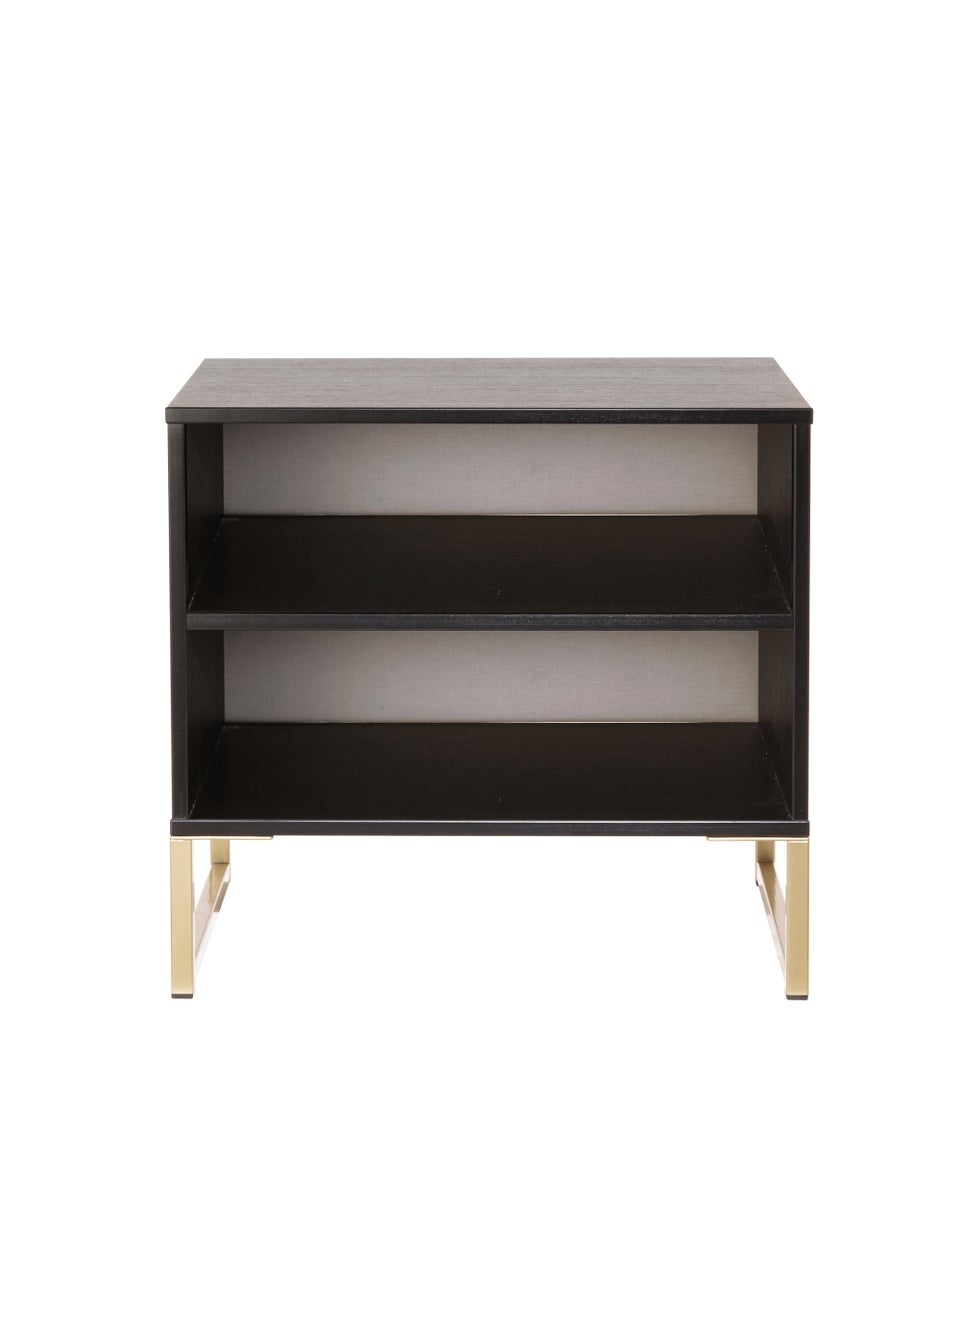 Swift Cordoba Double Open Bedside Cabinet (54cm x 39.5cm x 57.5cm)